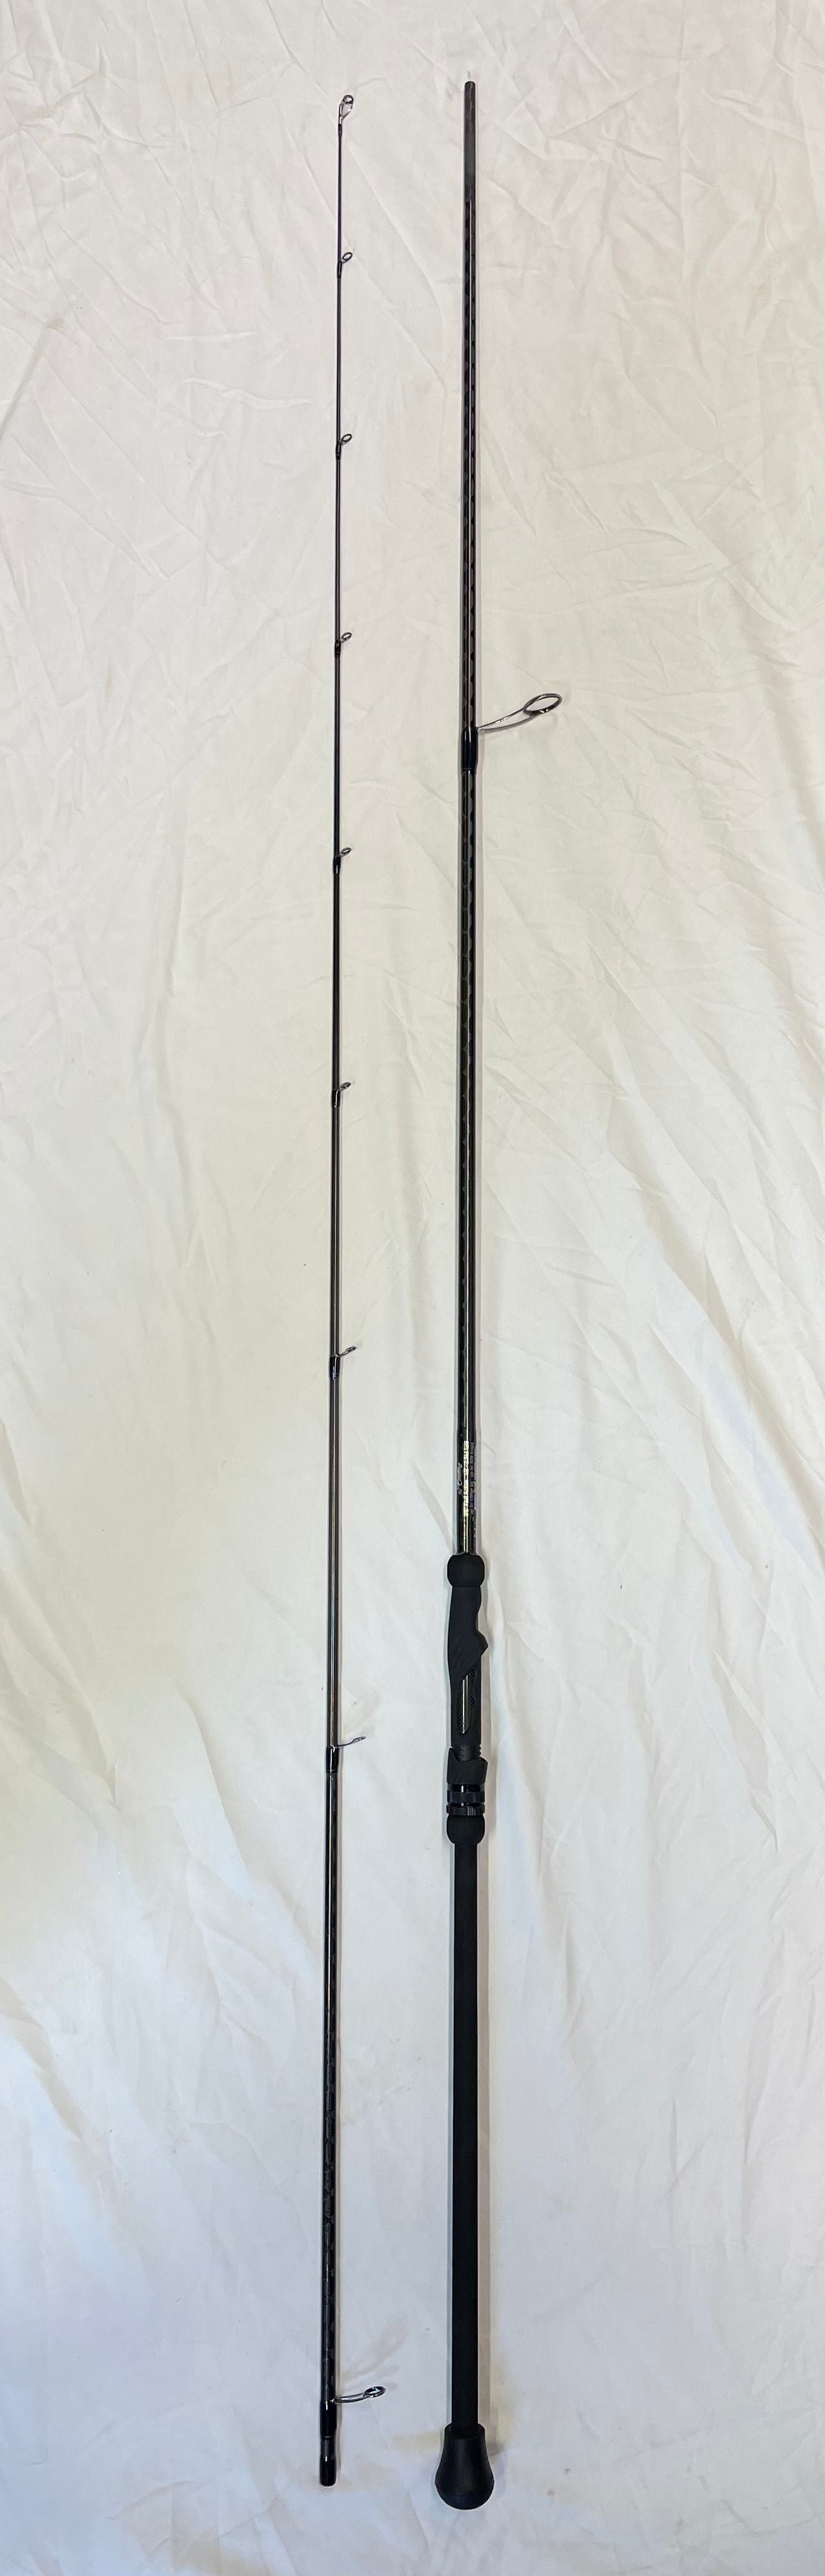  Telescopic Fishing Rod, Premium Graphite Carbon